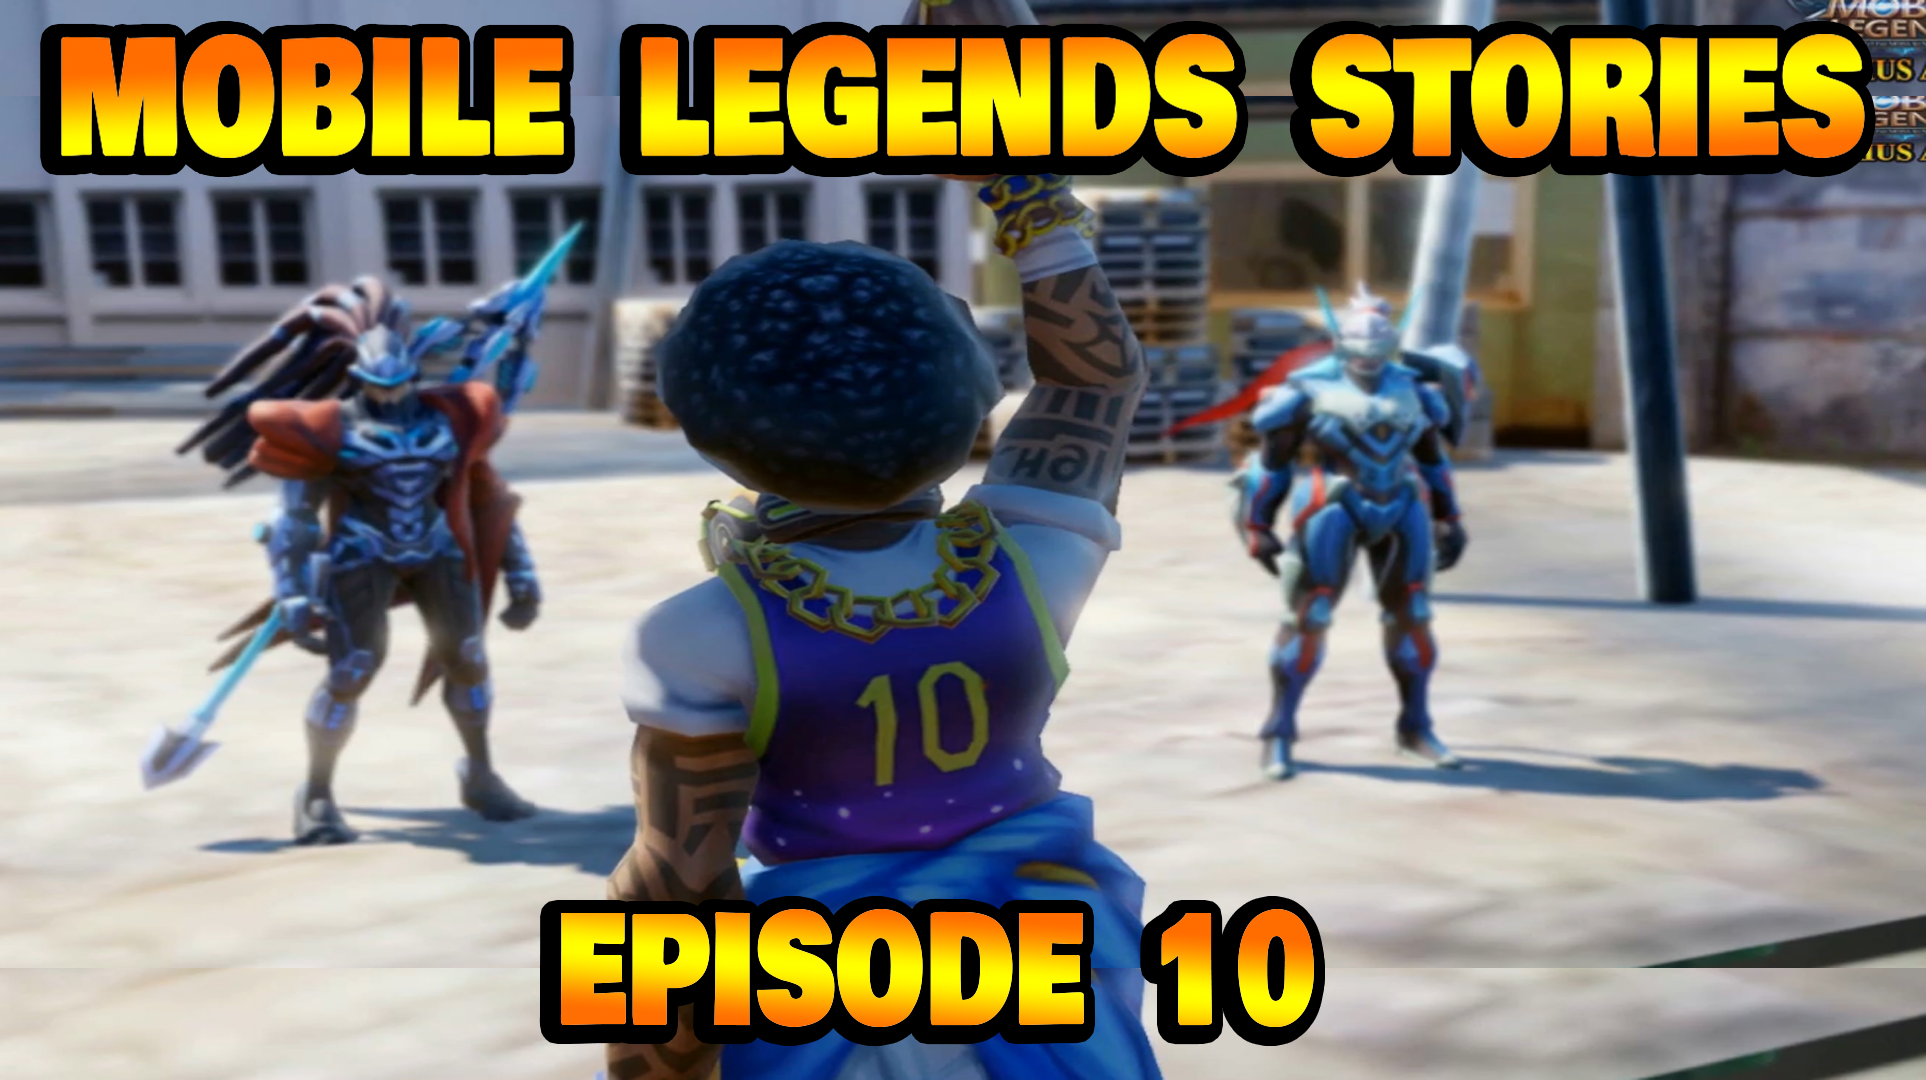 Mobile Legends Stories Episode 10